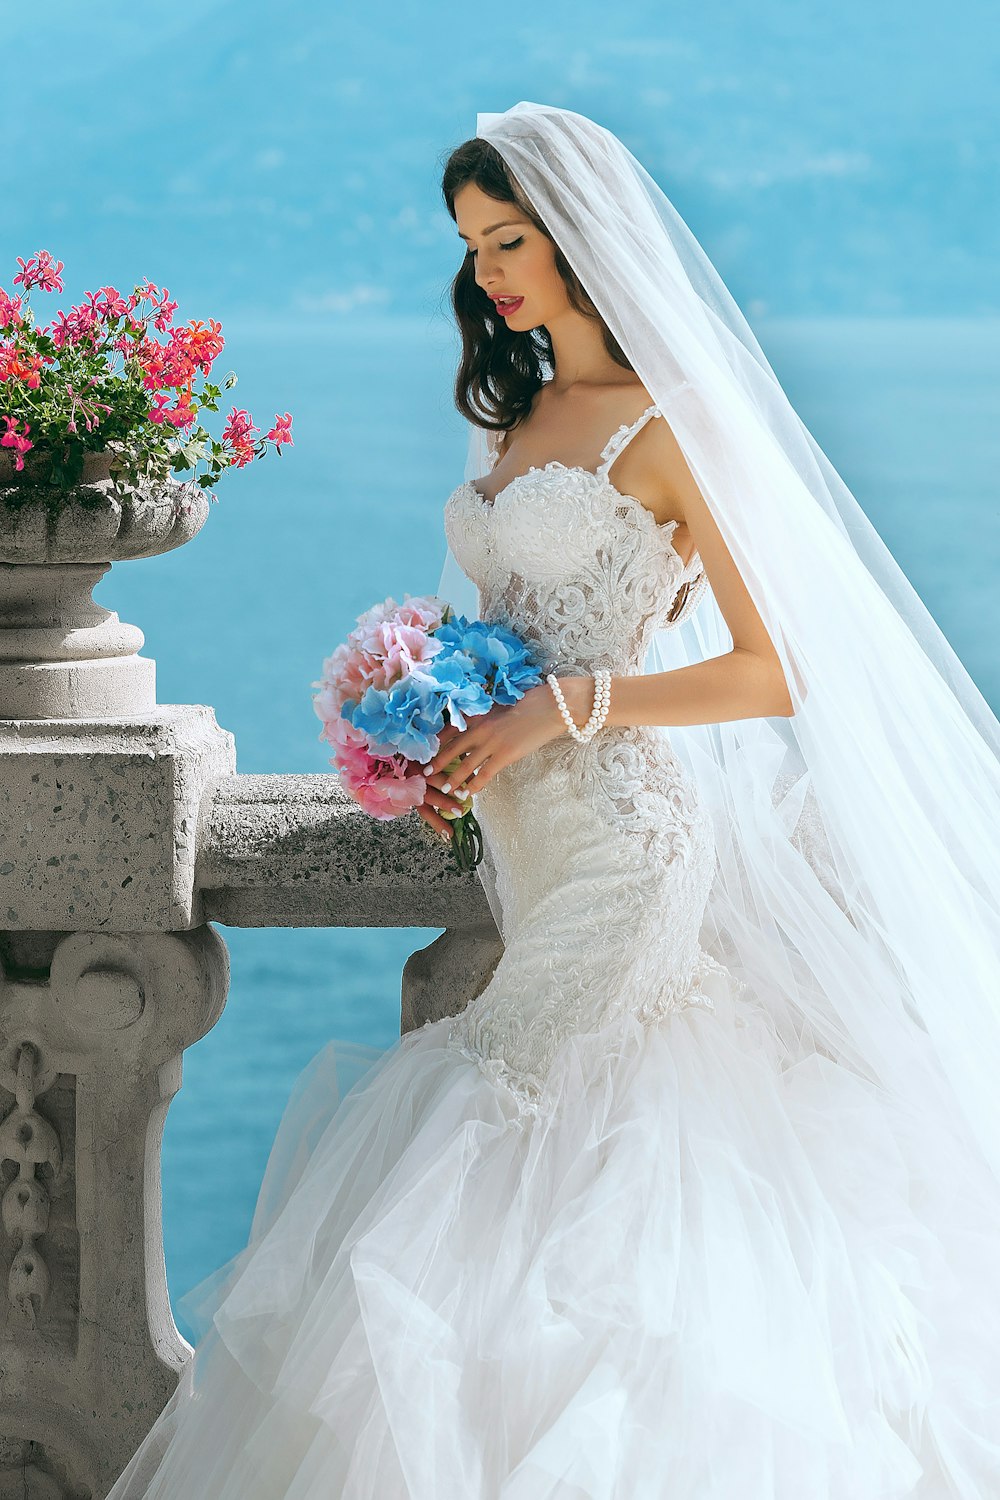 donna in abito da sposa mentre tiene il fiore durante il giorno